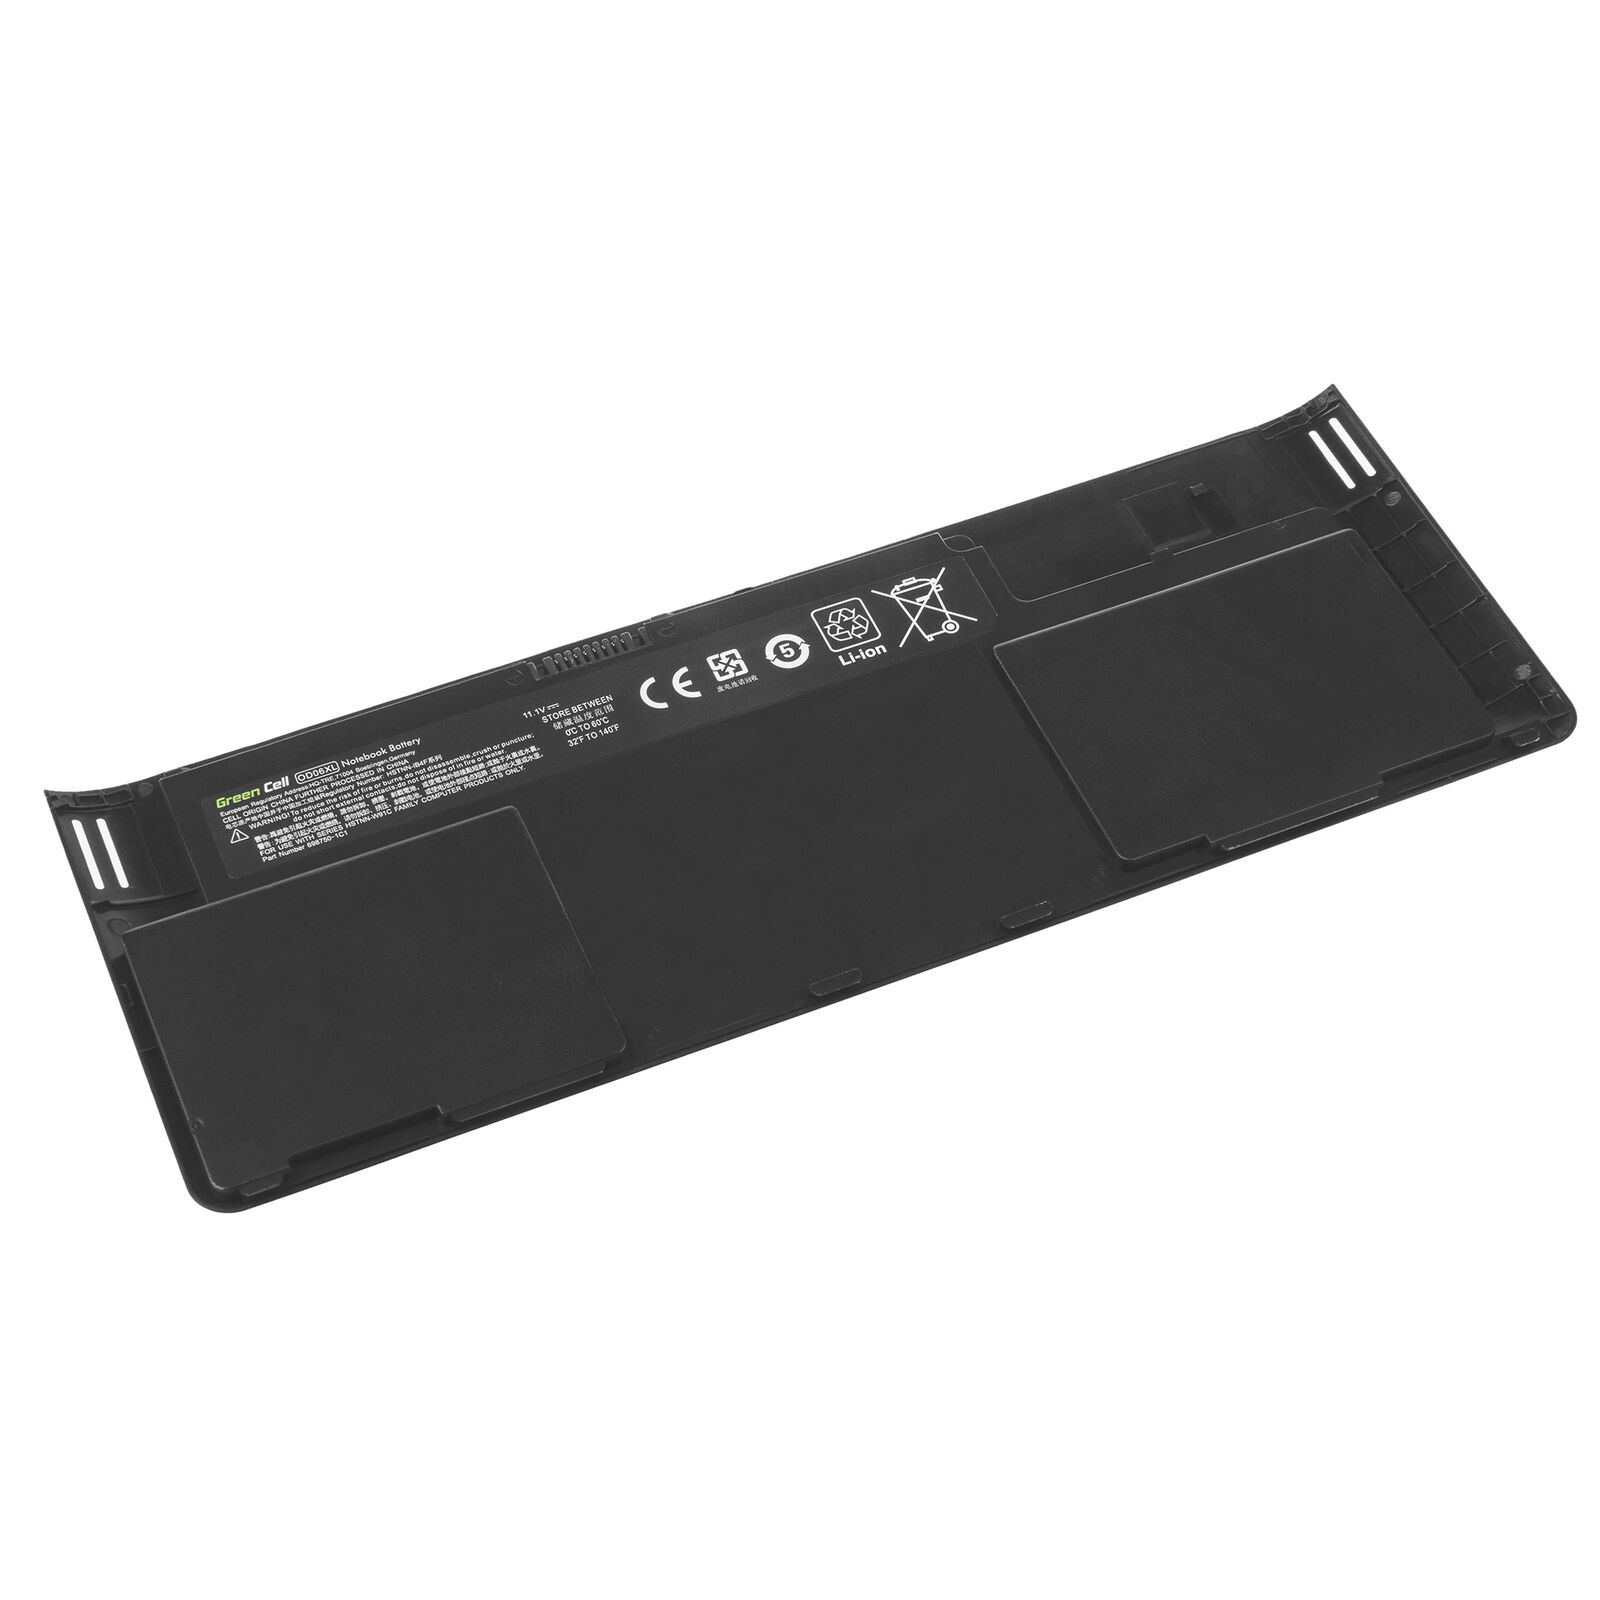 Batterie pour OD06XL H6L25AA HSTNN-W91C 698943-001 HP EliteBook Revolve 810 G1 G2(compatible)